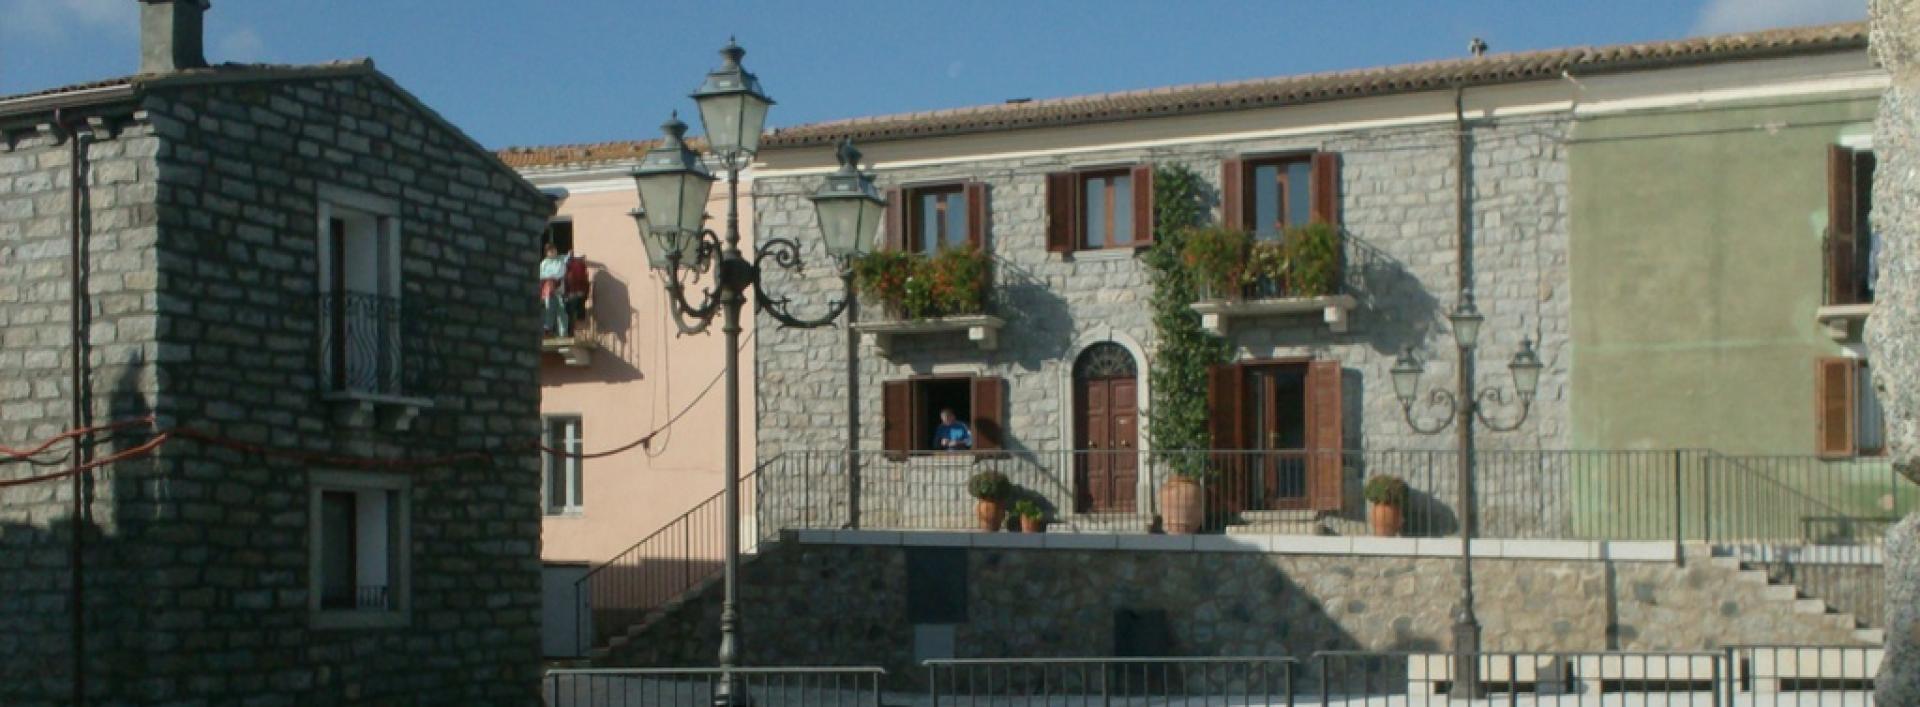 Sant'Antonio di Gallura. Centro storico